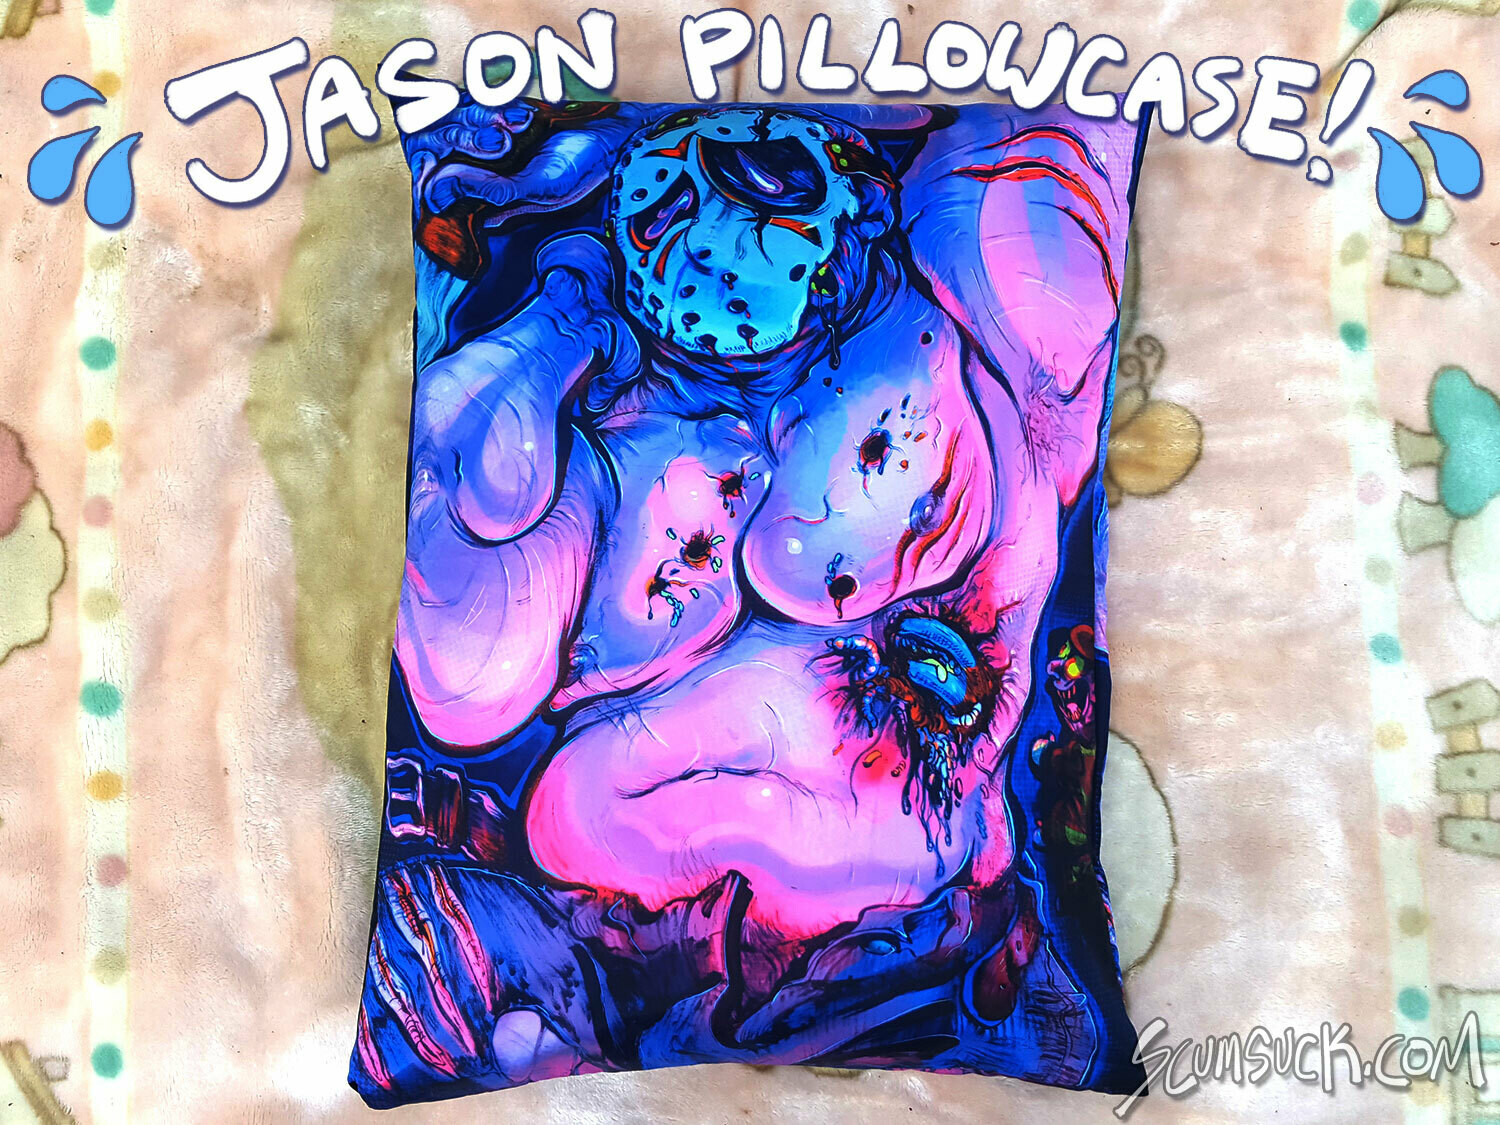 Jason Dakimakura / Pillow Case